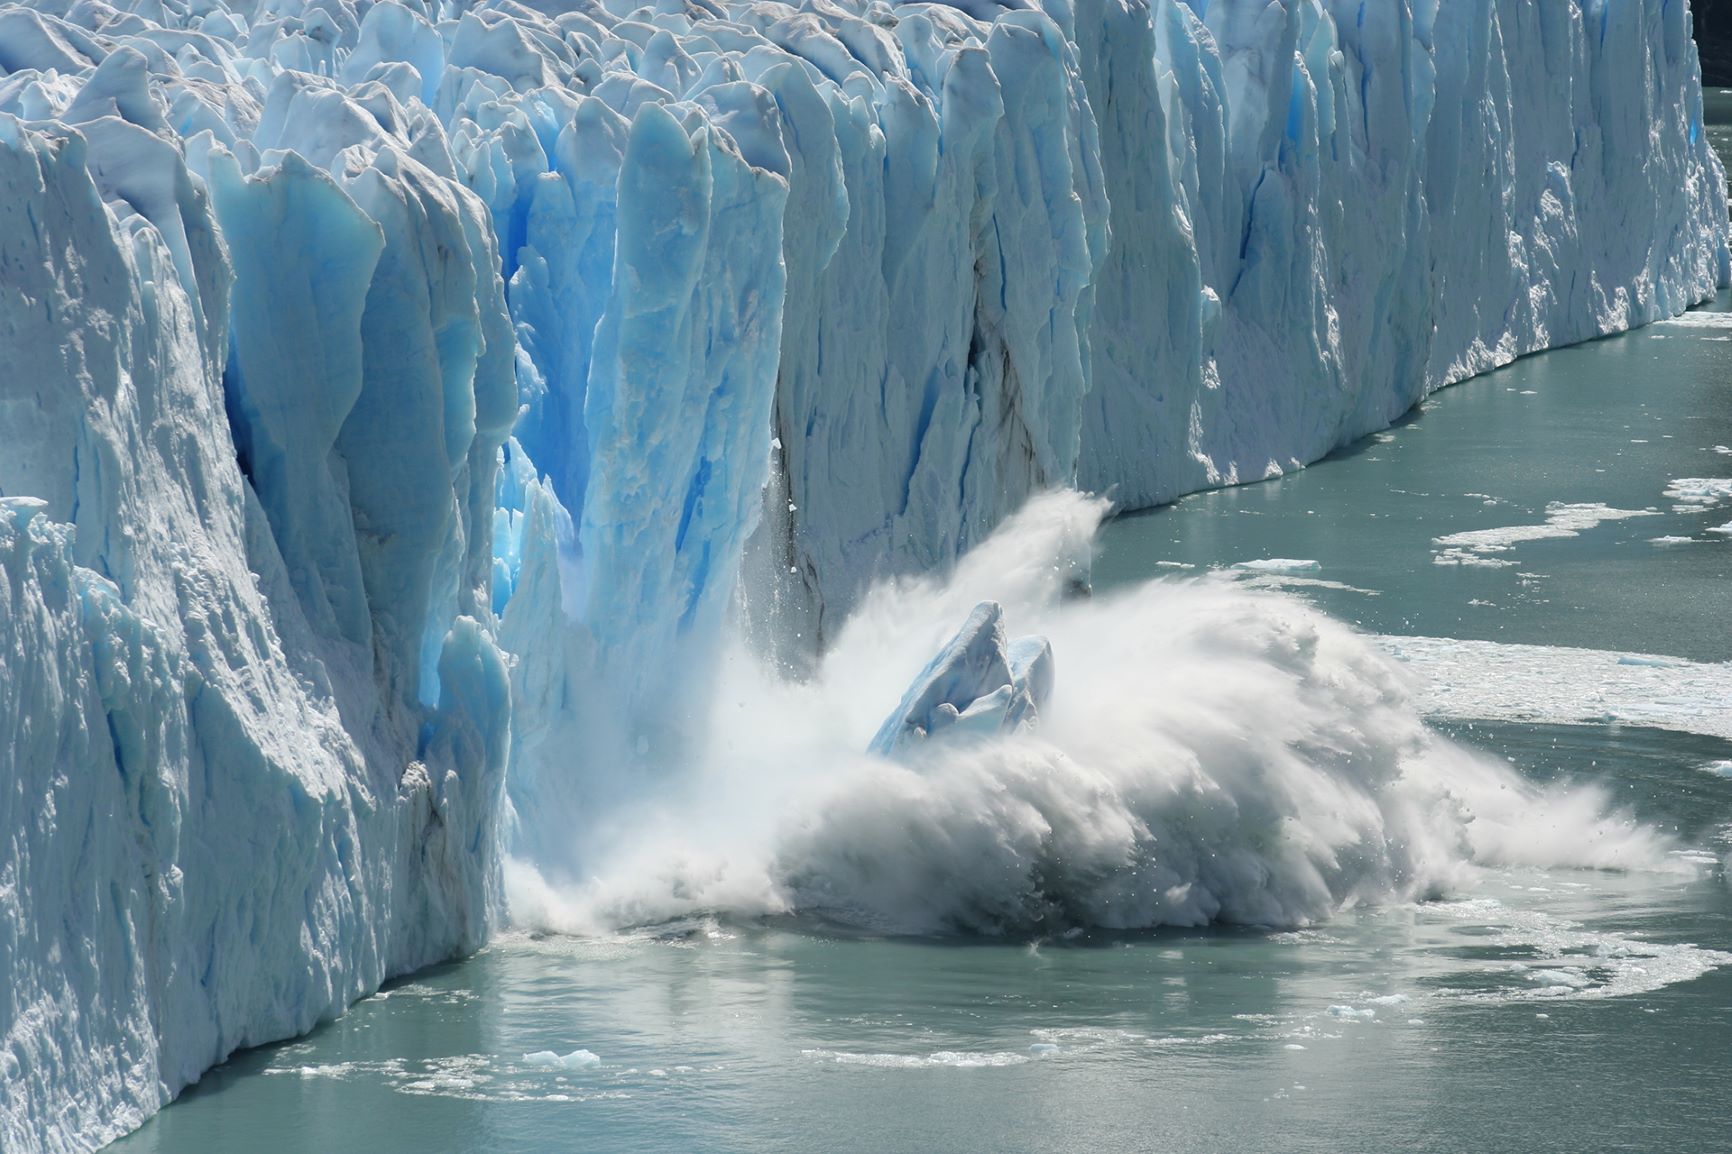 A glacier melting